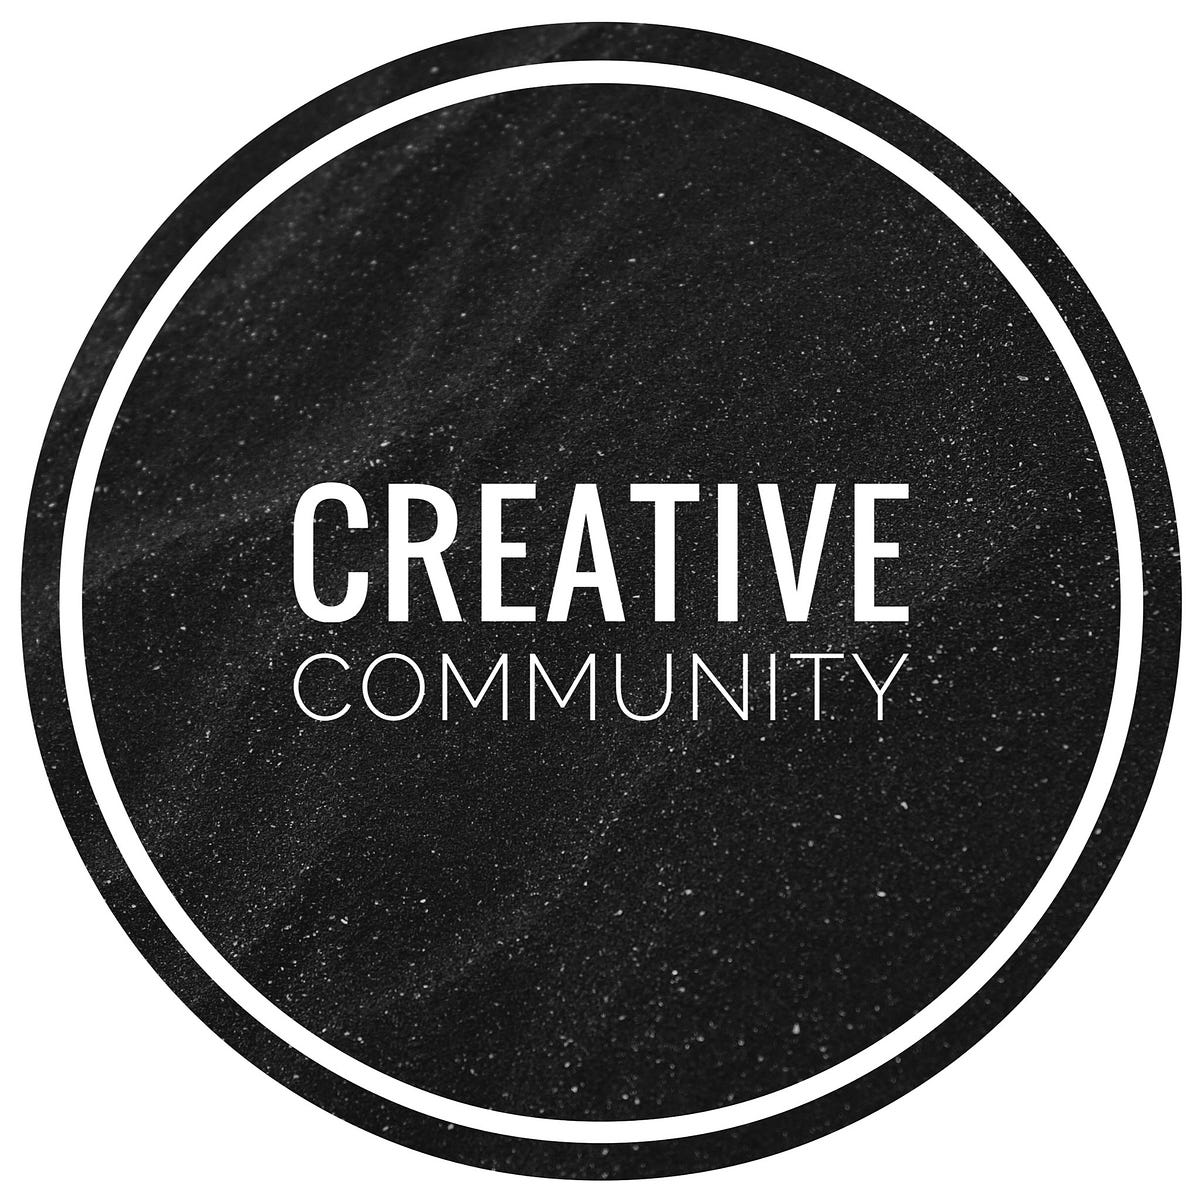 Create community. Creative community. Creative community planning.